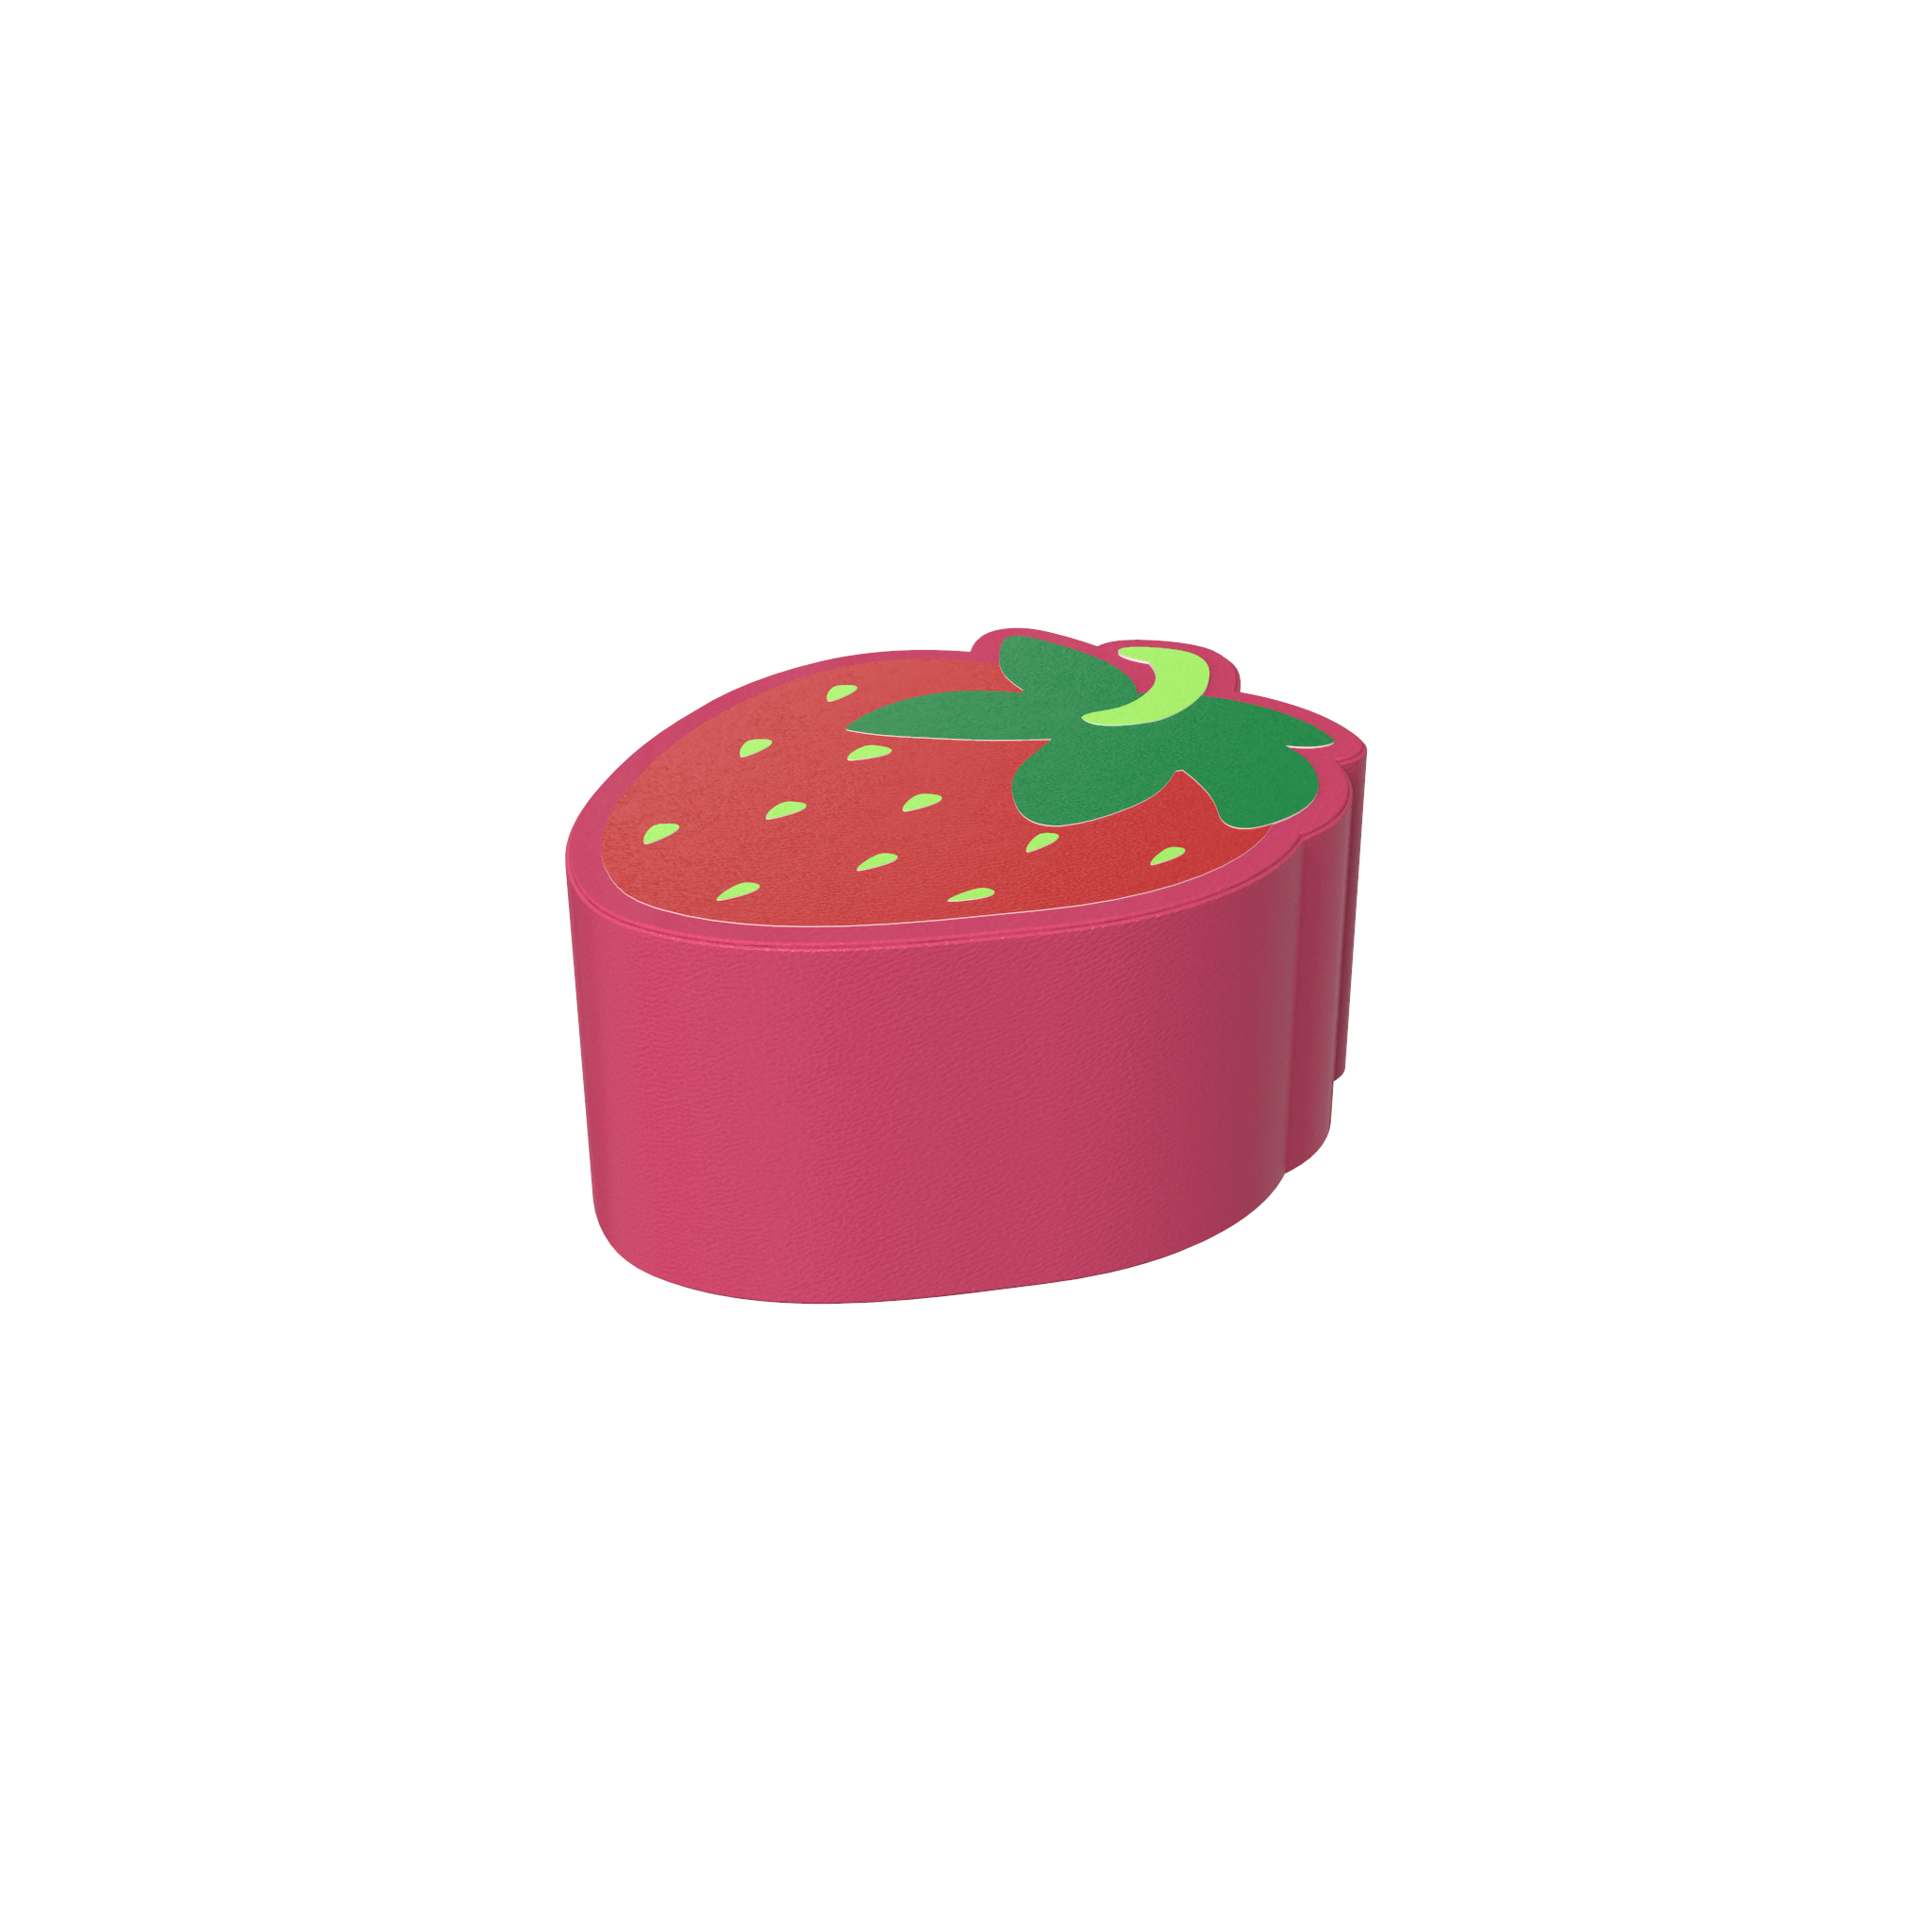 Quest'imagine mostra gioco soft Strawberry